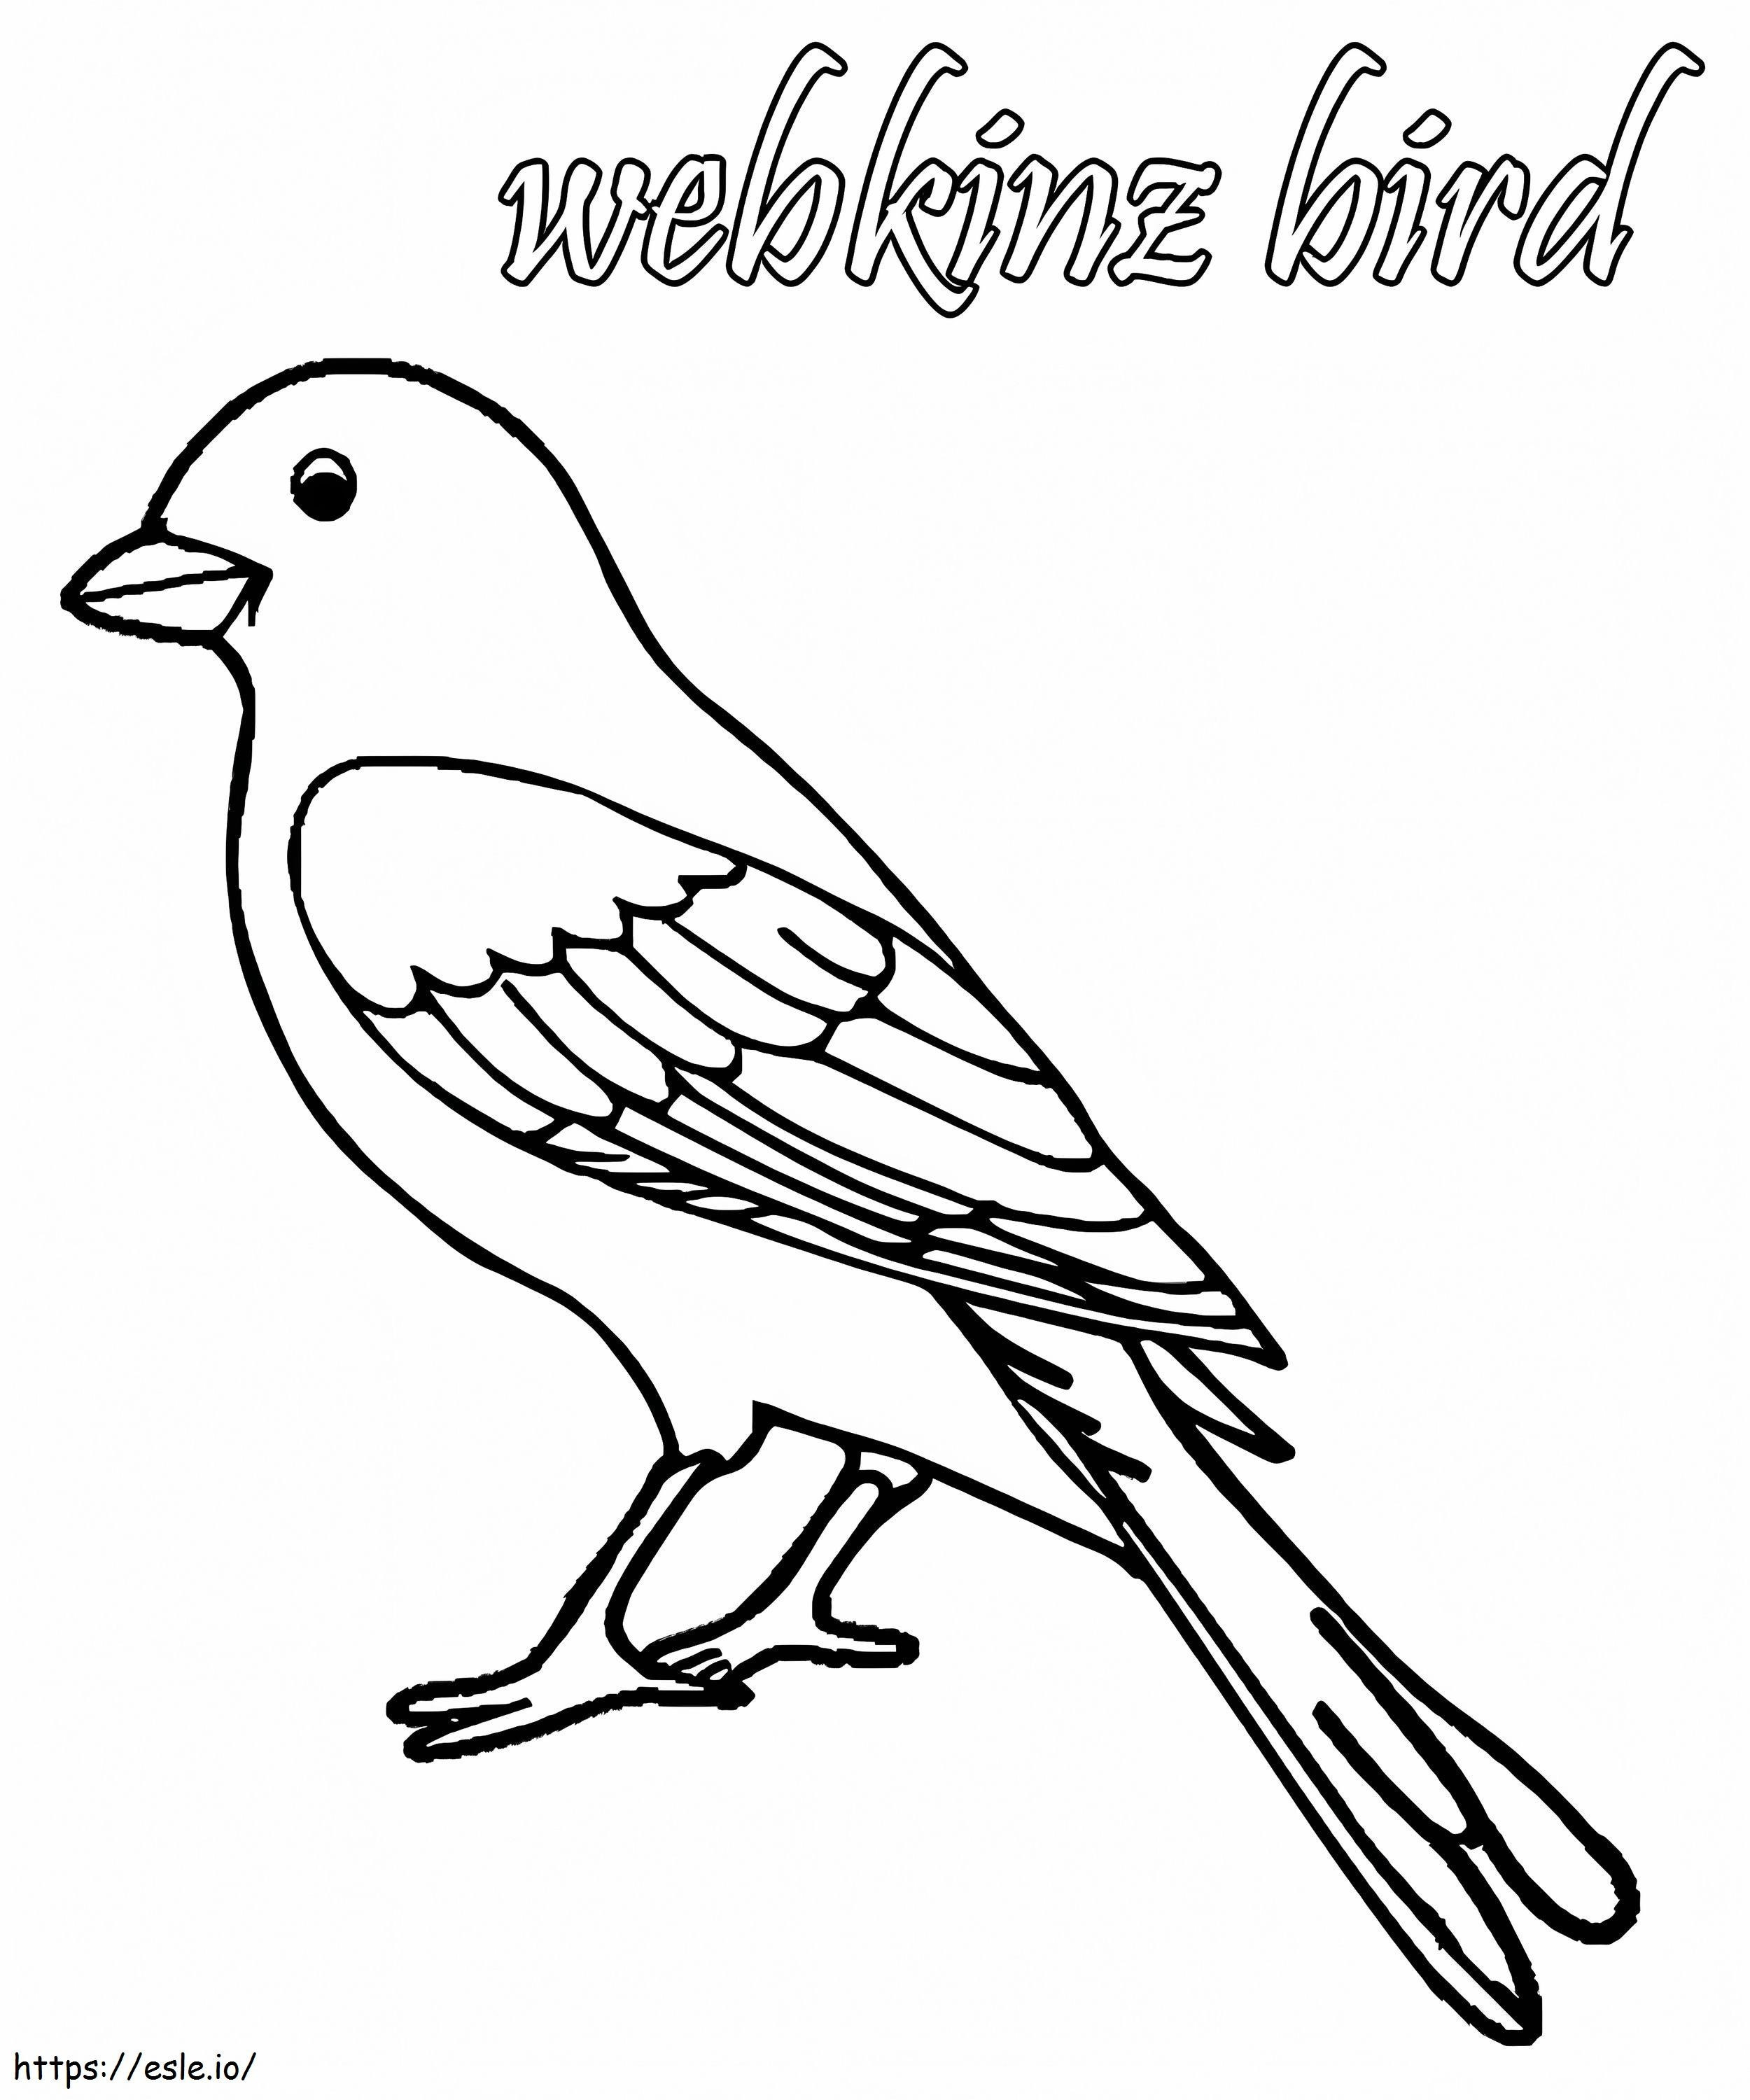 Pasăre Webkinz de colorat